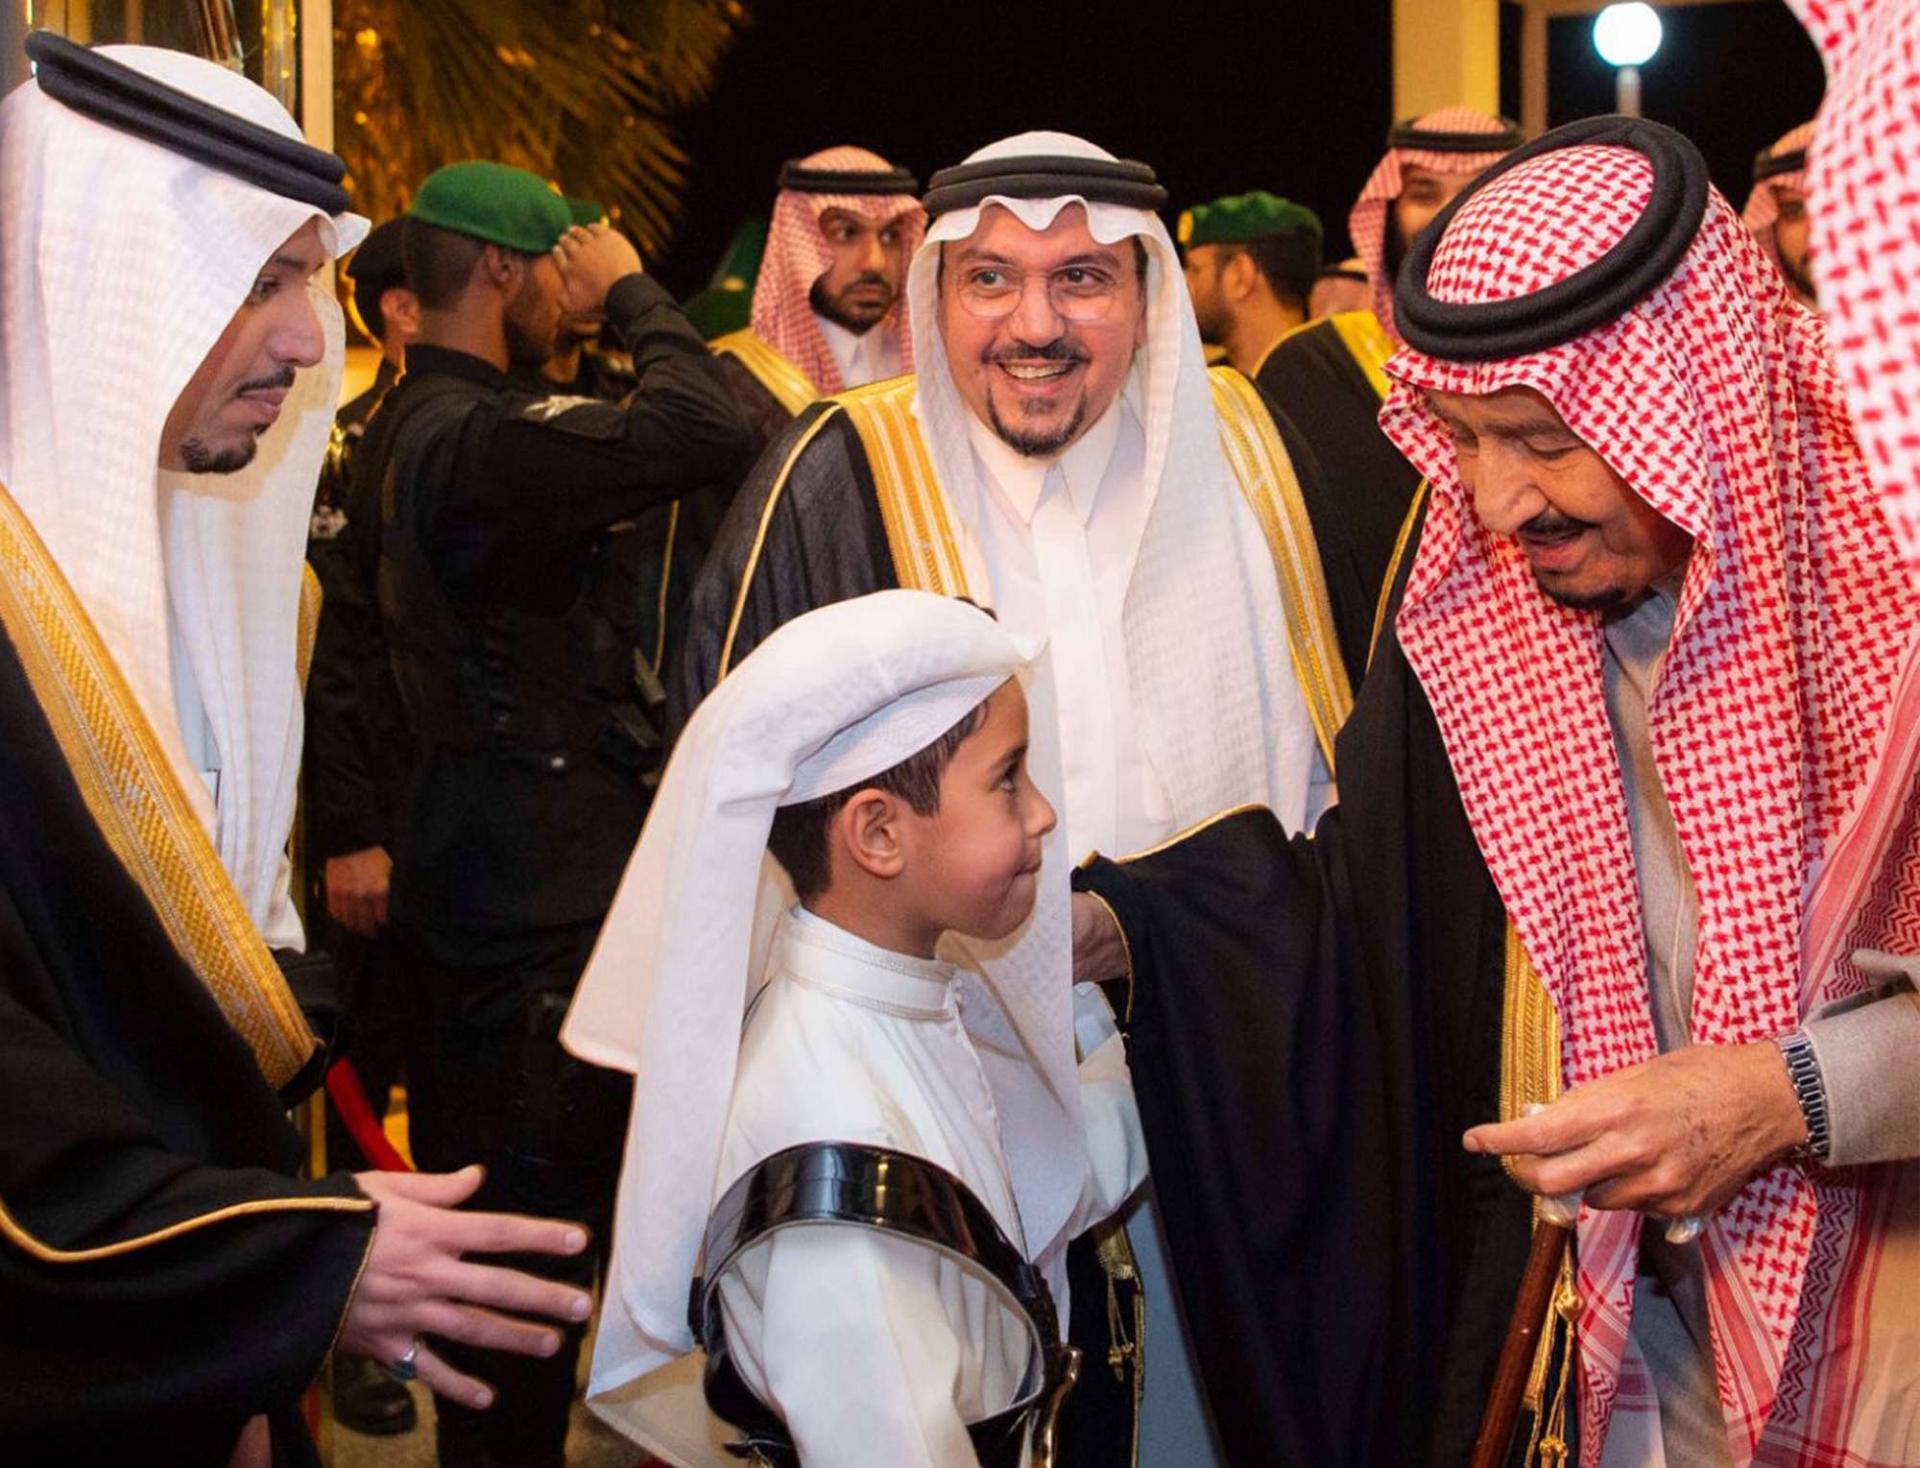 العاهل السعودي الملك سلمان بن عبدالعزيز قام مؤخرا بجولات ميدانية في المملكة